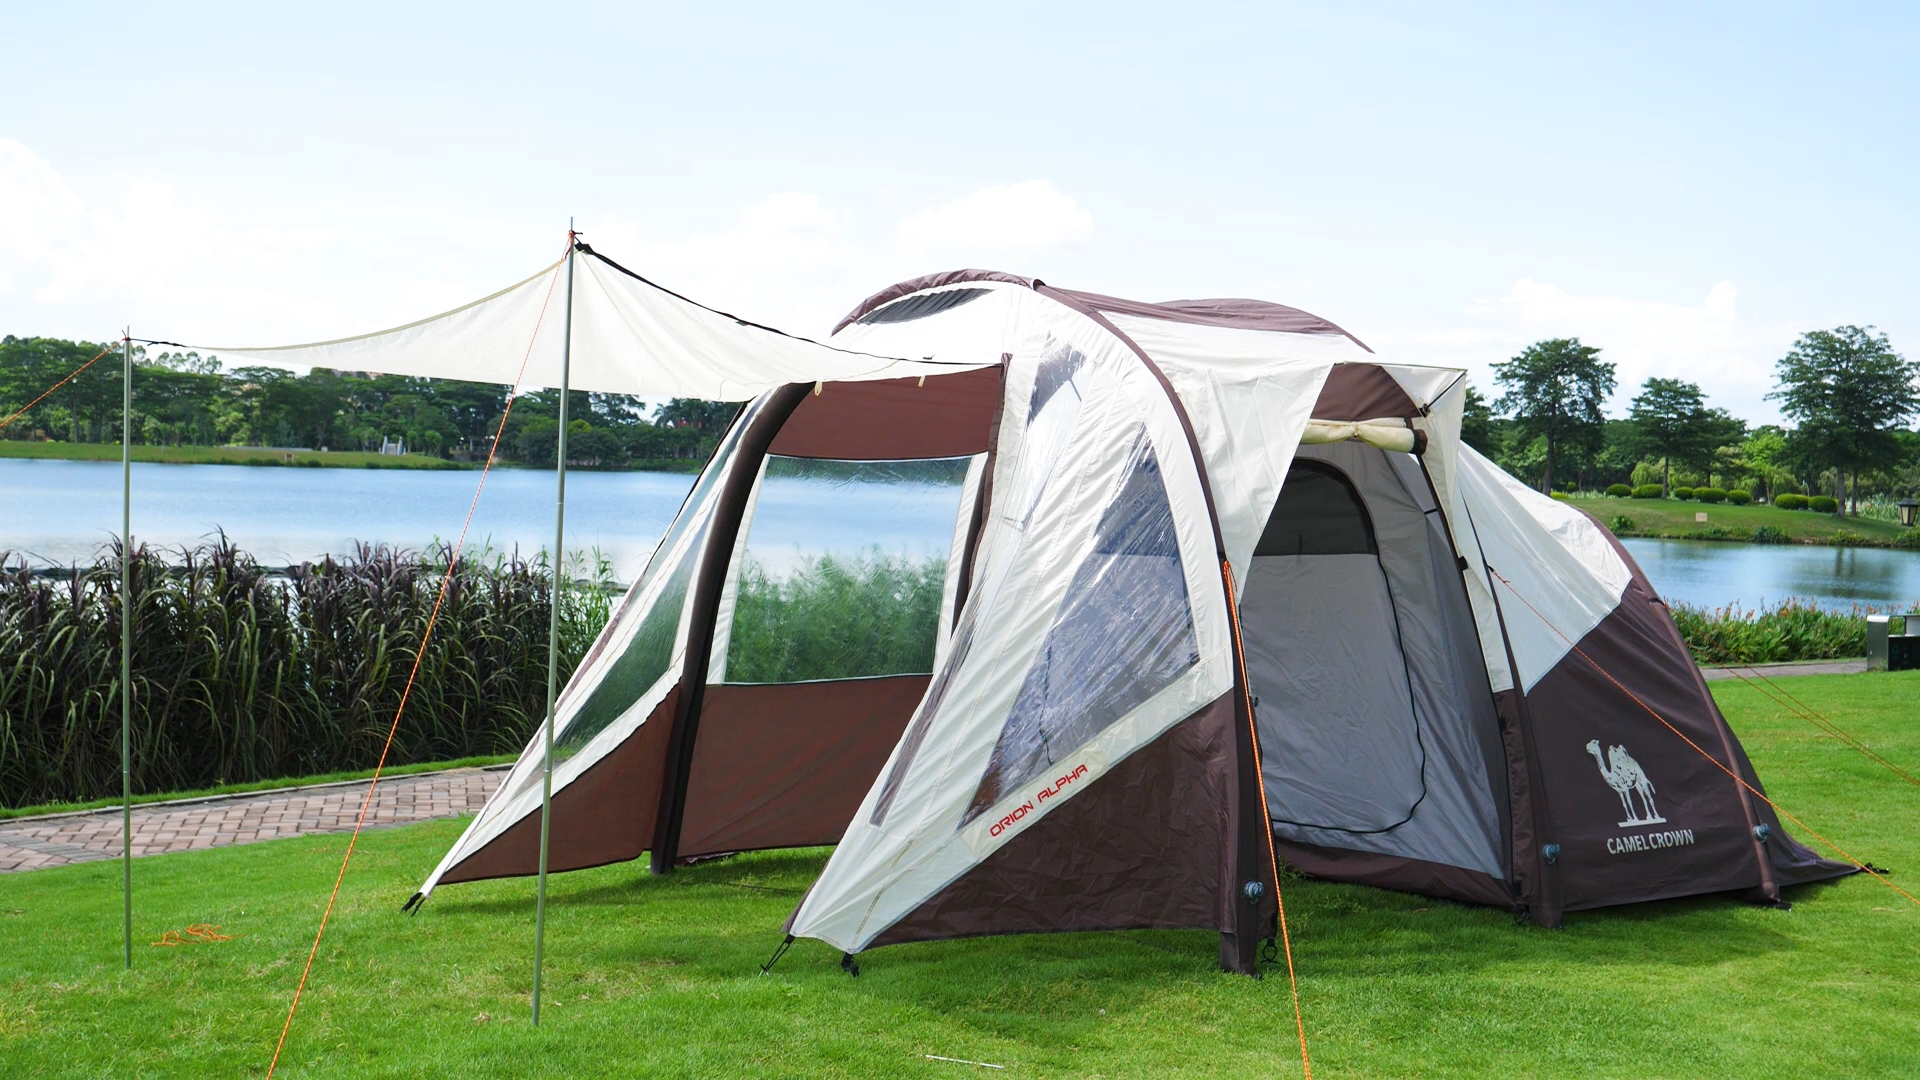 Camel Quick Setup portátil Design personalizado Preço competitivo Abertura rápida Tenda de inverno Glamping Tents Family Pop Up Tent1